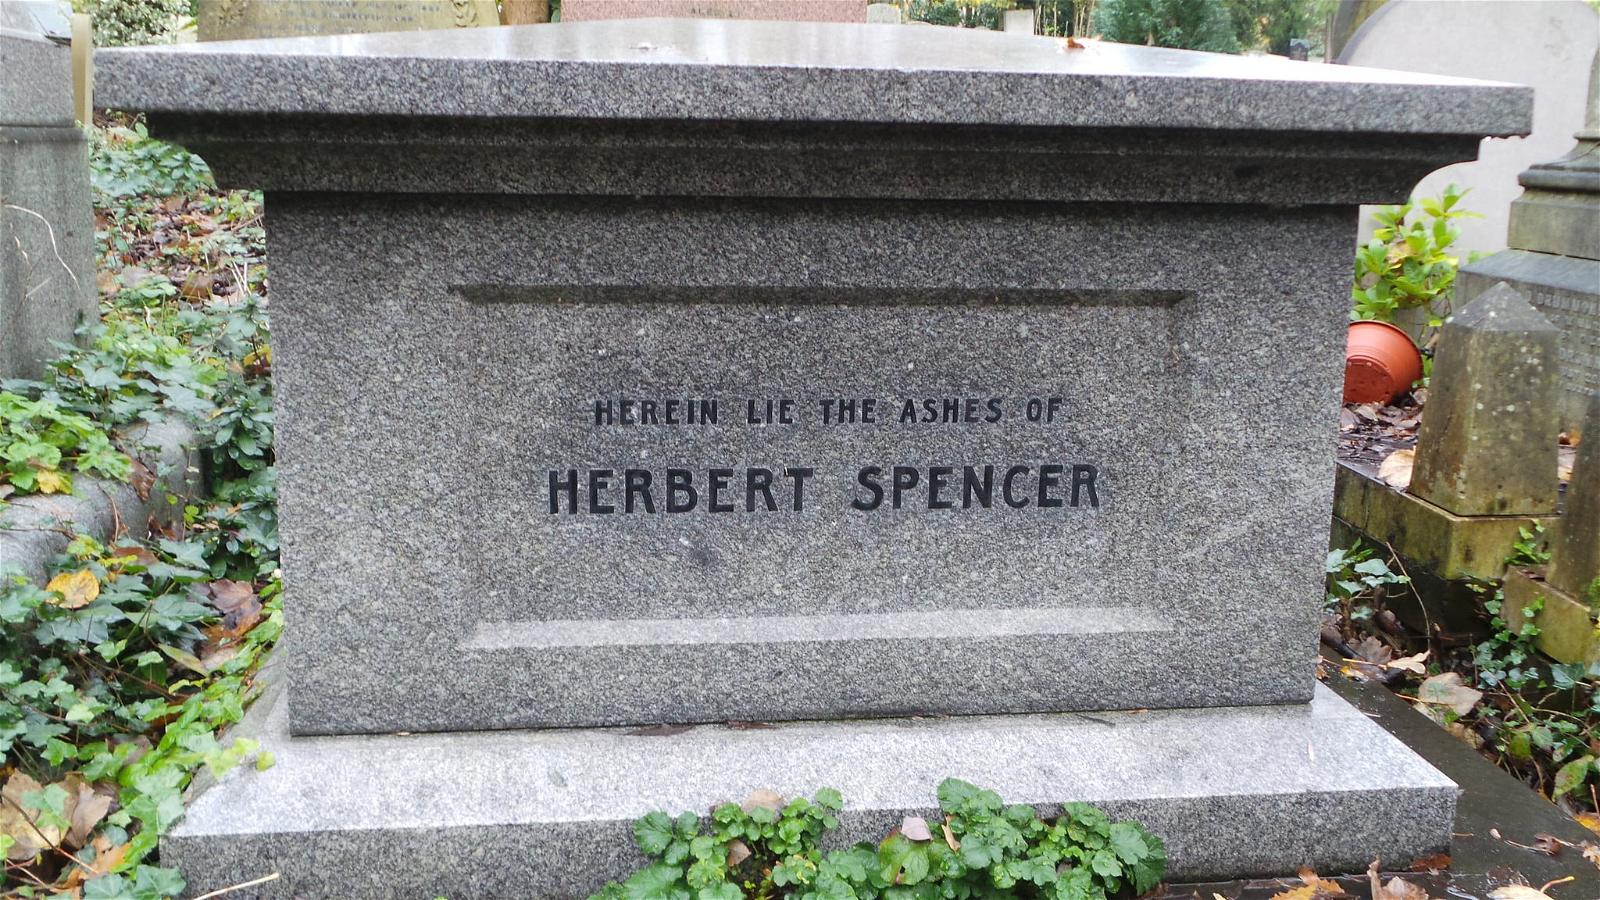 Kuva Herbert Spencer. highgate london cemetery herbertspencer